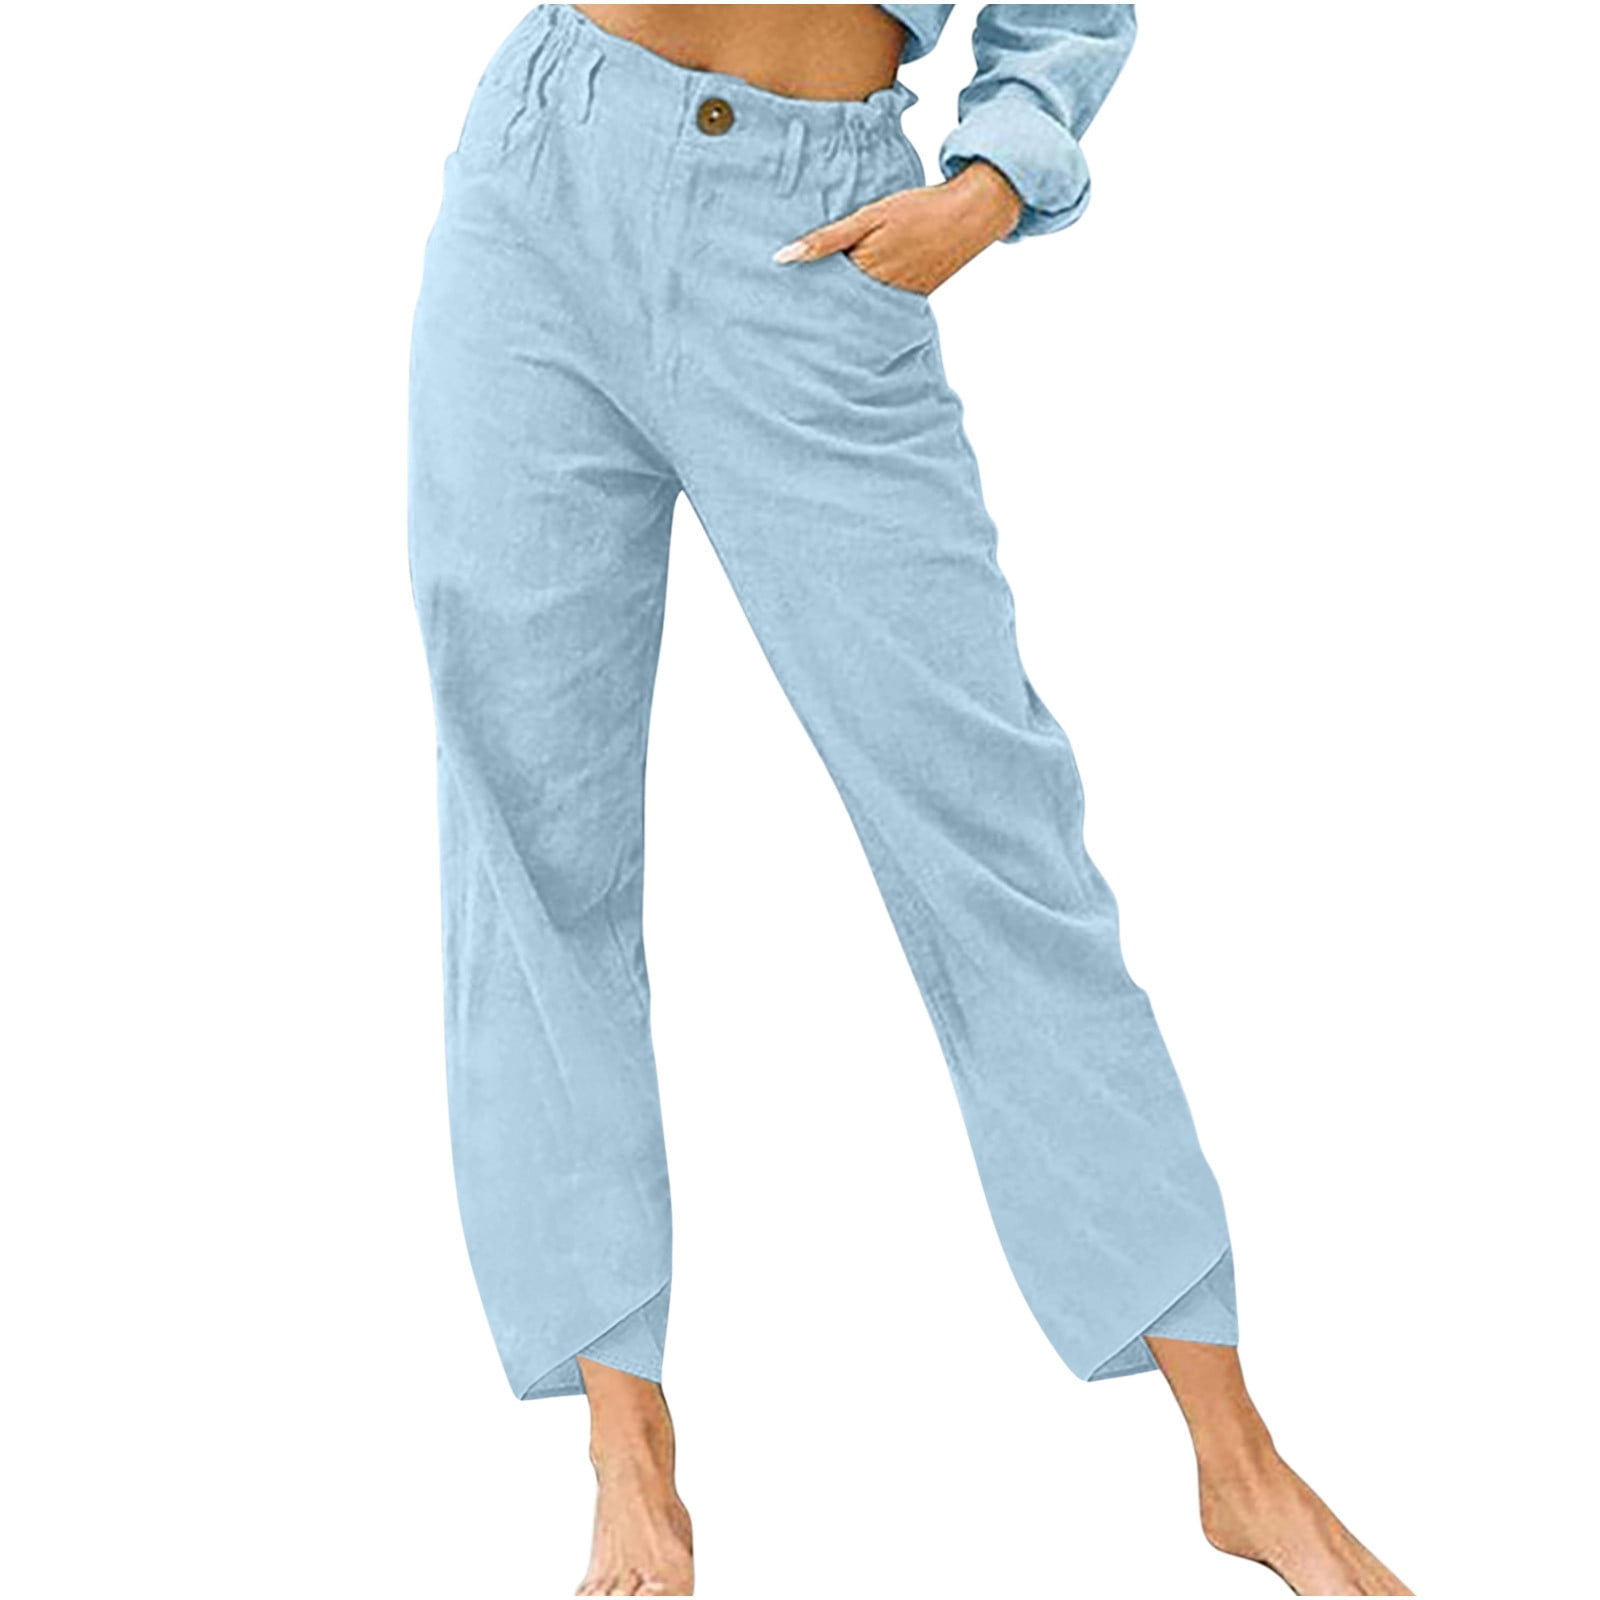 ELABCH Pants for Woman Plus Size Capri Summer High Waisted Pants Cotton ...